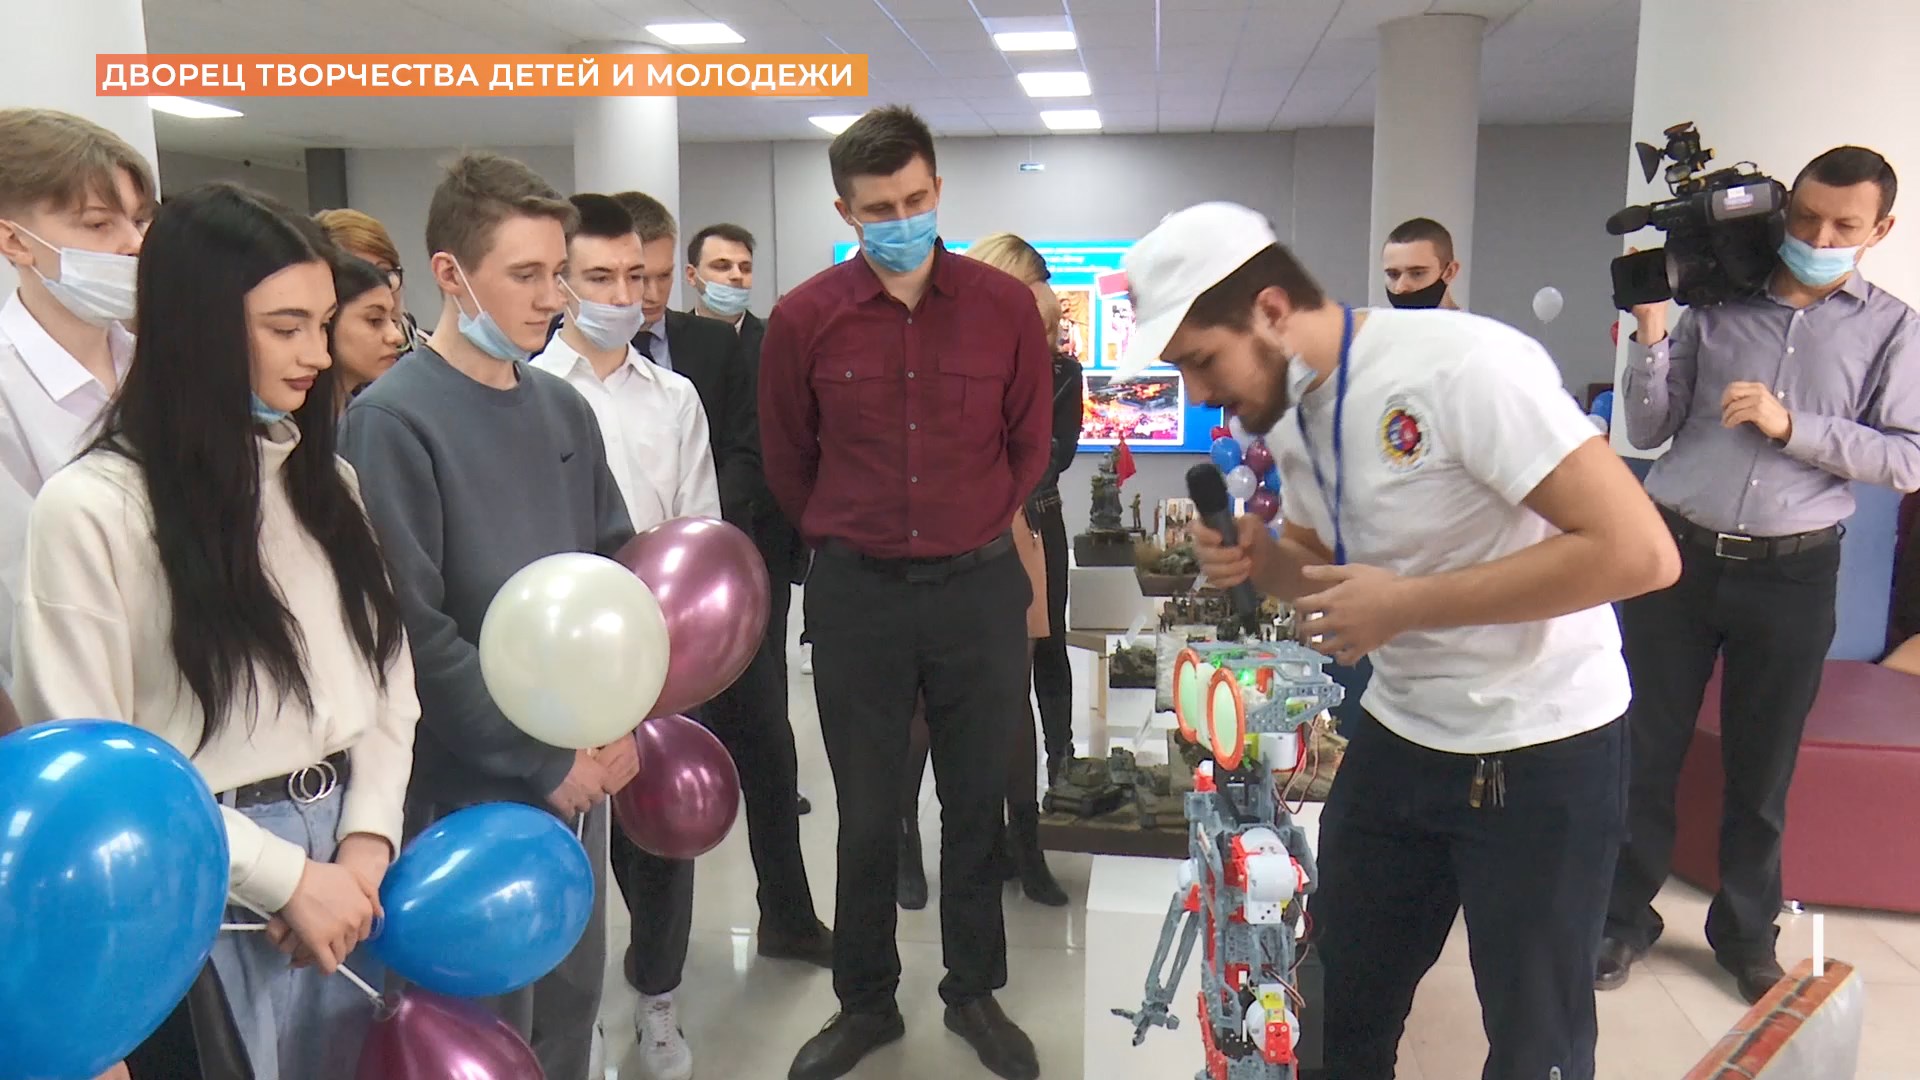 Дворец творчества детей и молодежи предлагает детям из Донбасса выбрать себе кружки и секции